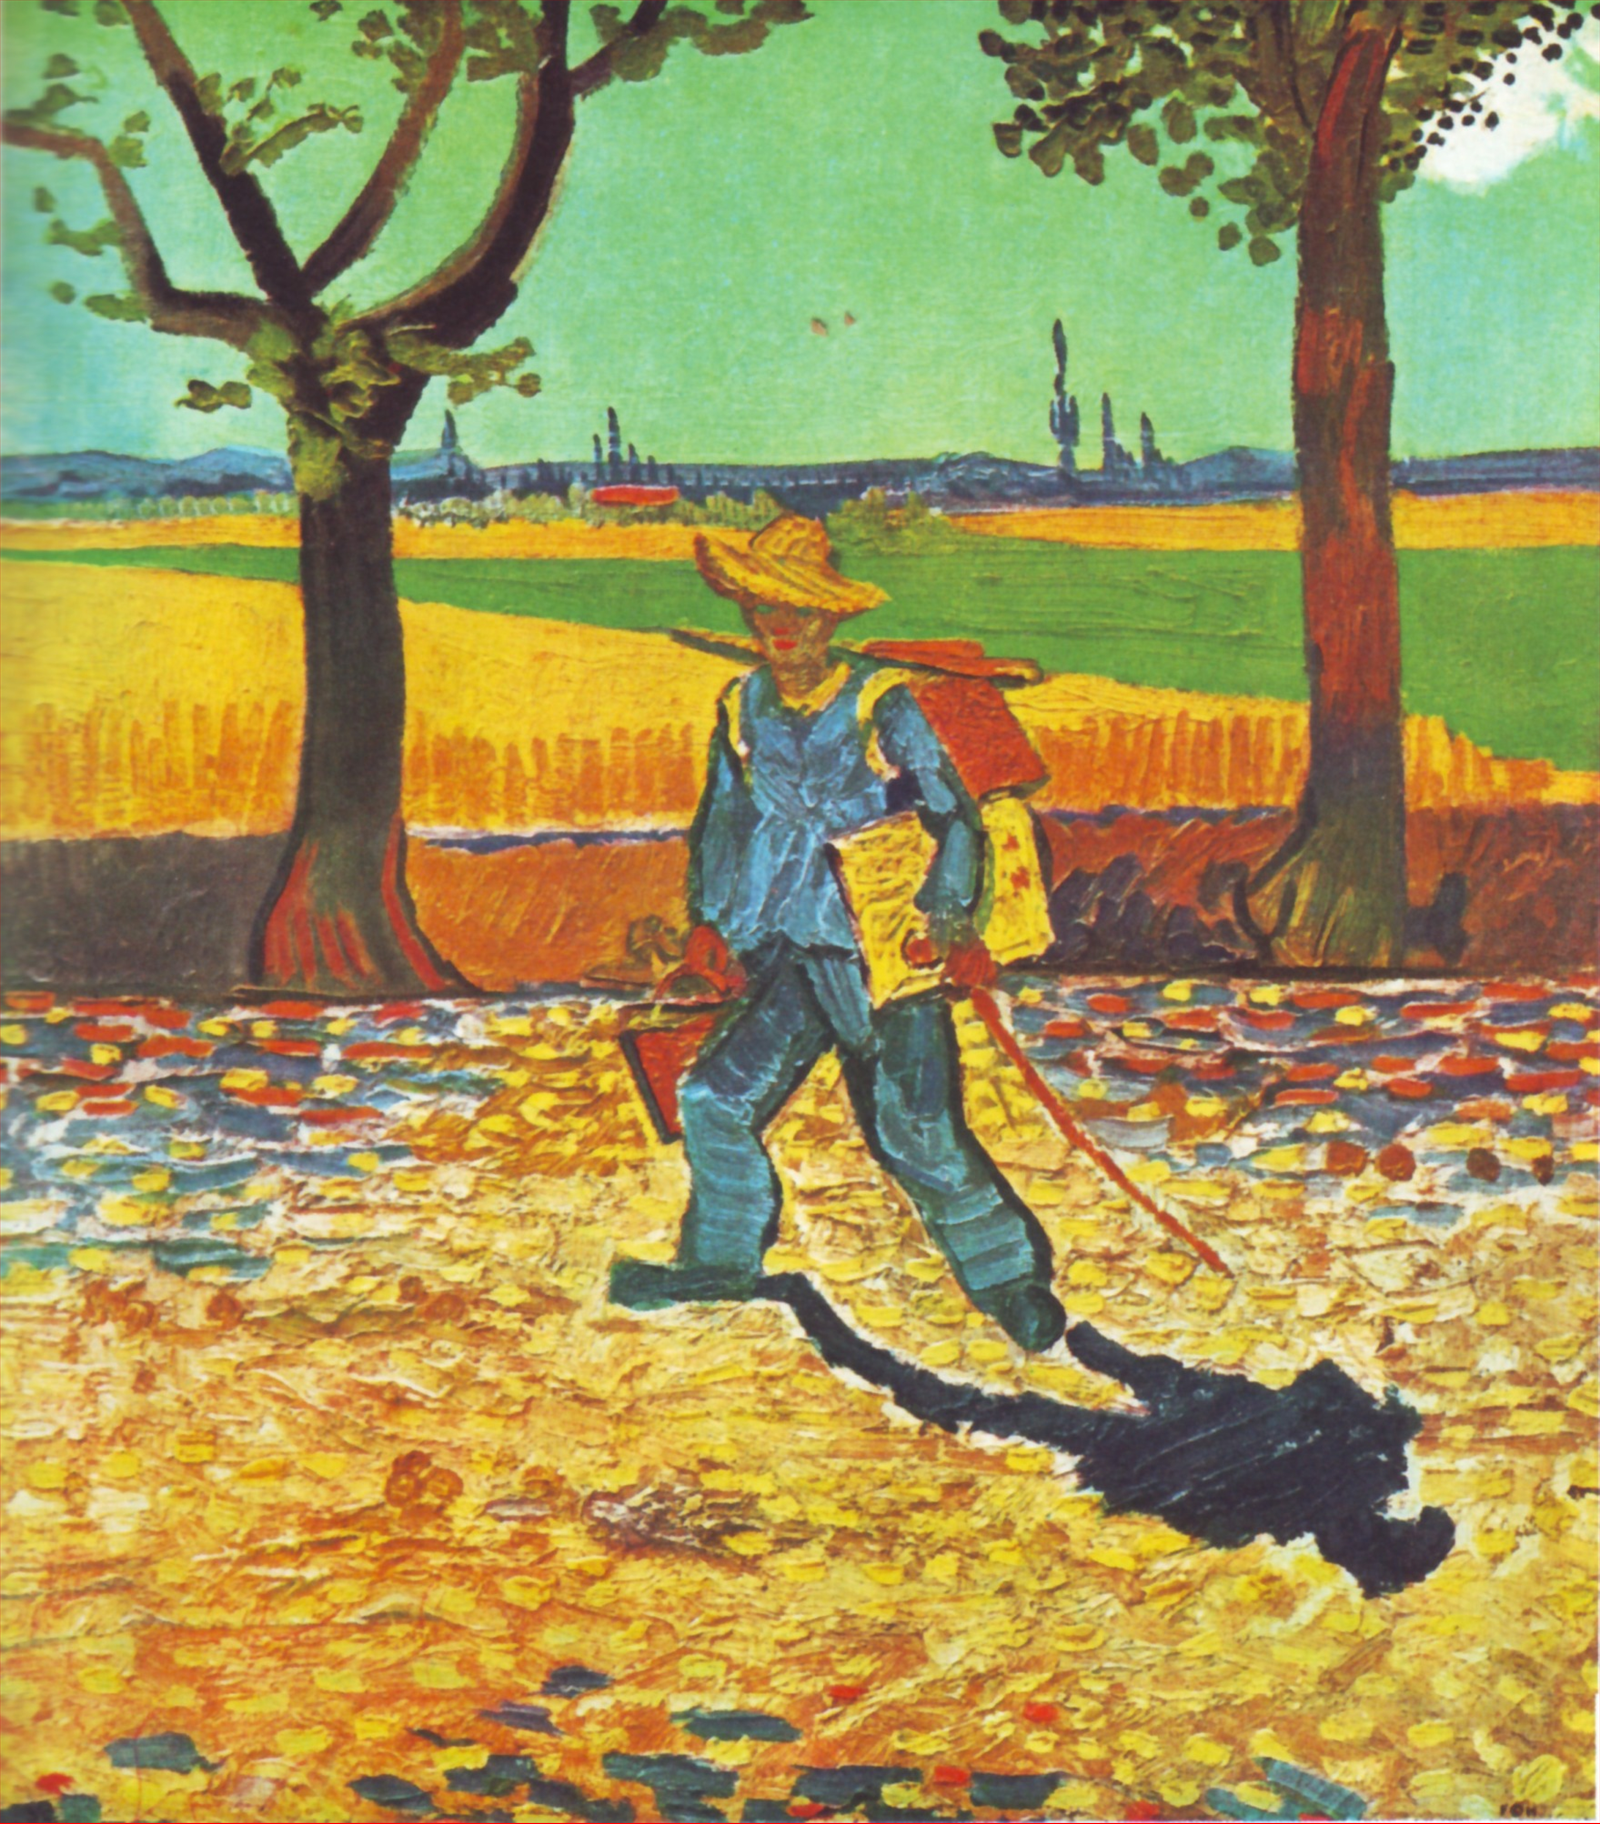 Munkába tartó festő  by Vincent van Gogh - 1888 - - 